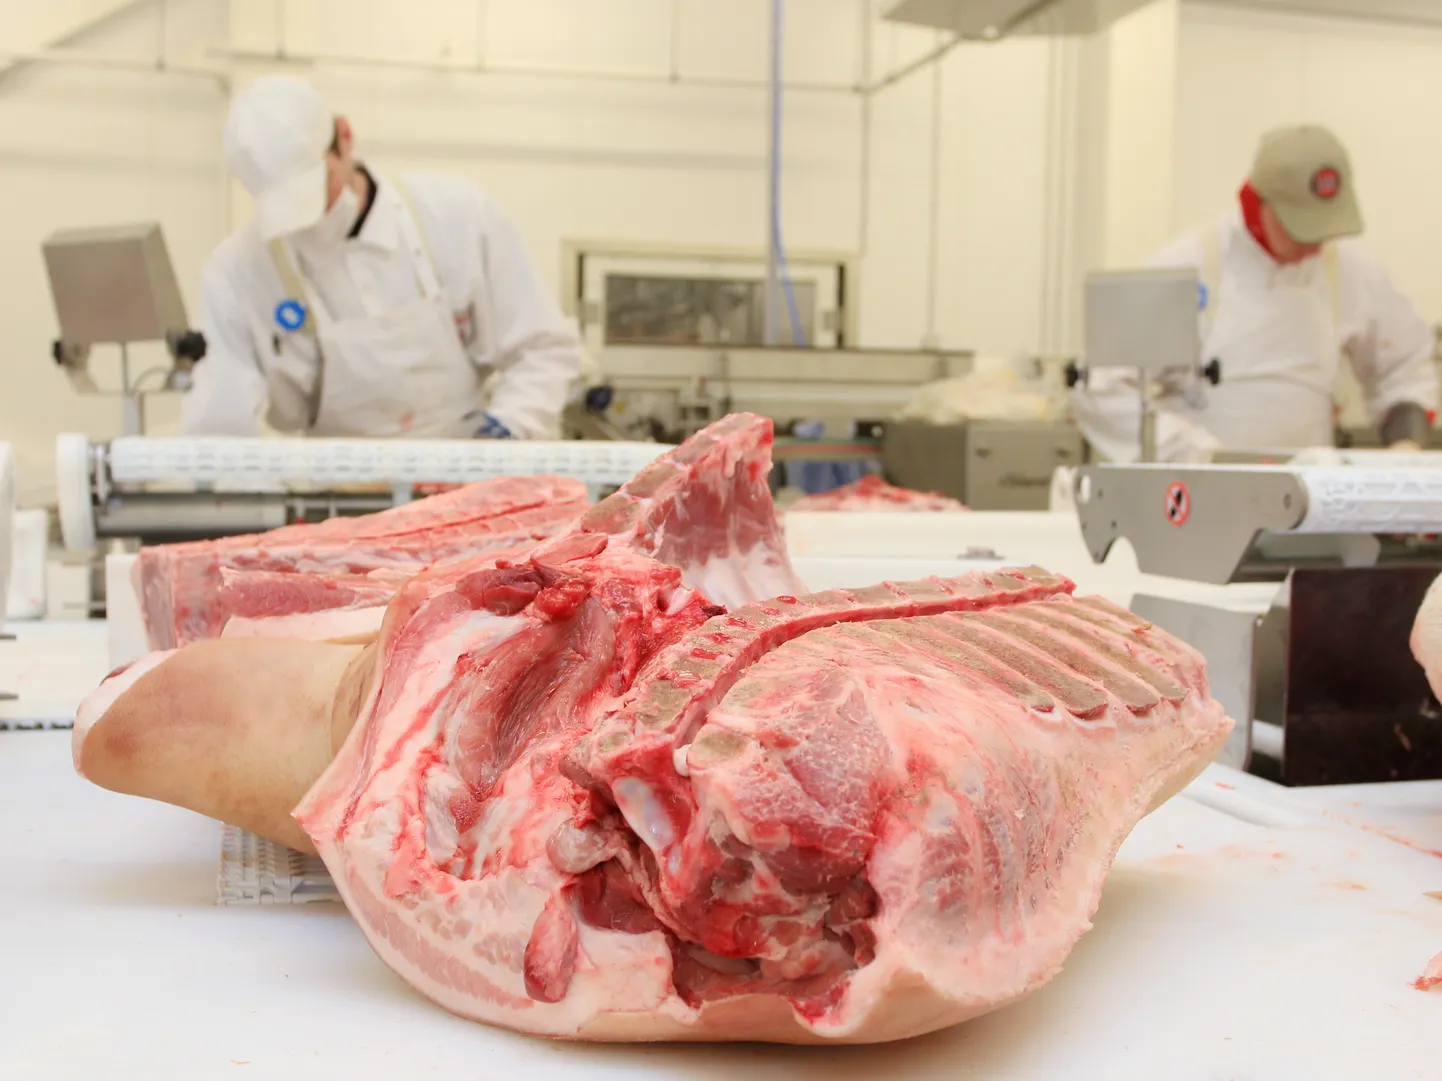 25aastaseks saanud Nõo lihatööstus